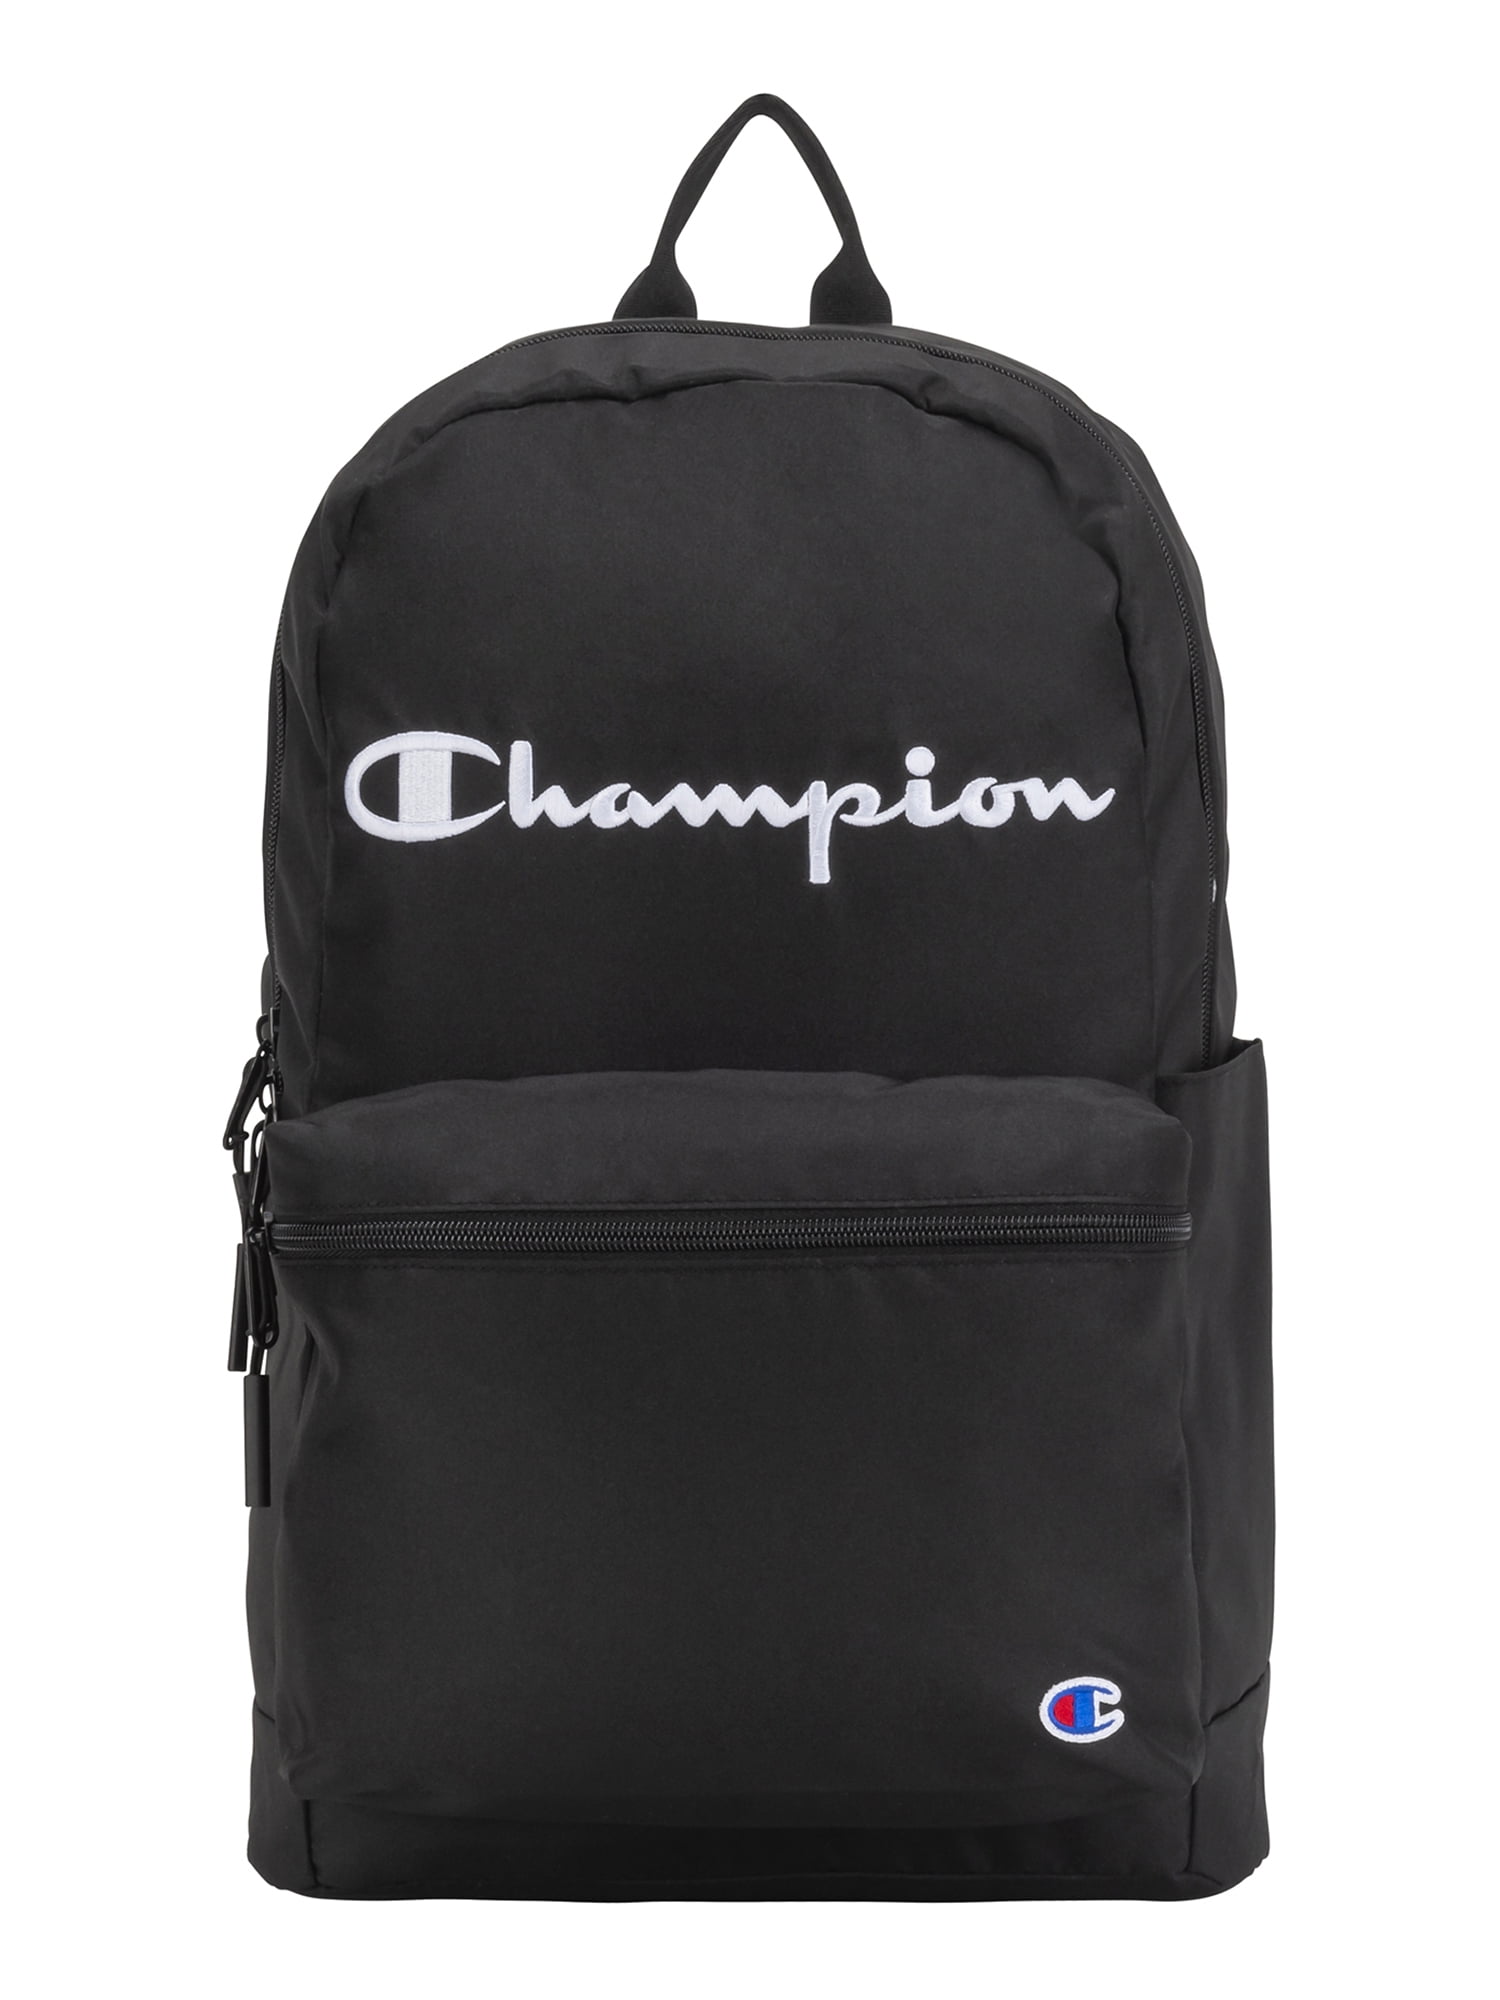 Champion Unisex Black Backpack Adjustable Straps Walmart.com